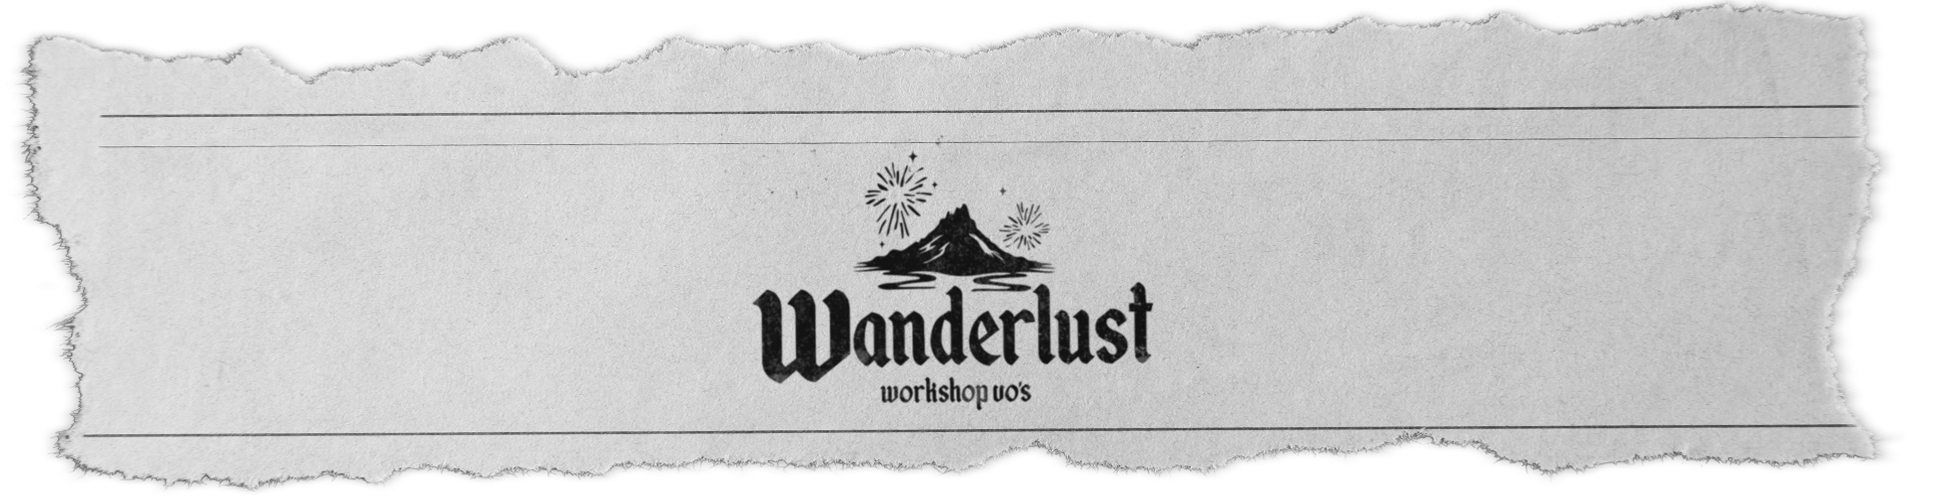 wanderlsut-1940-500-banner2